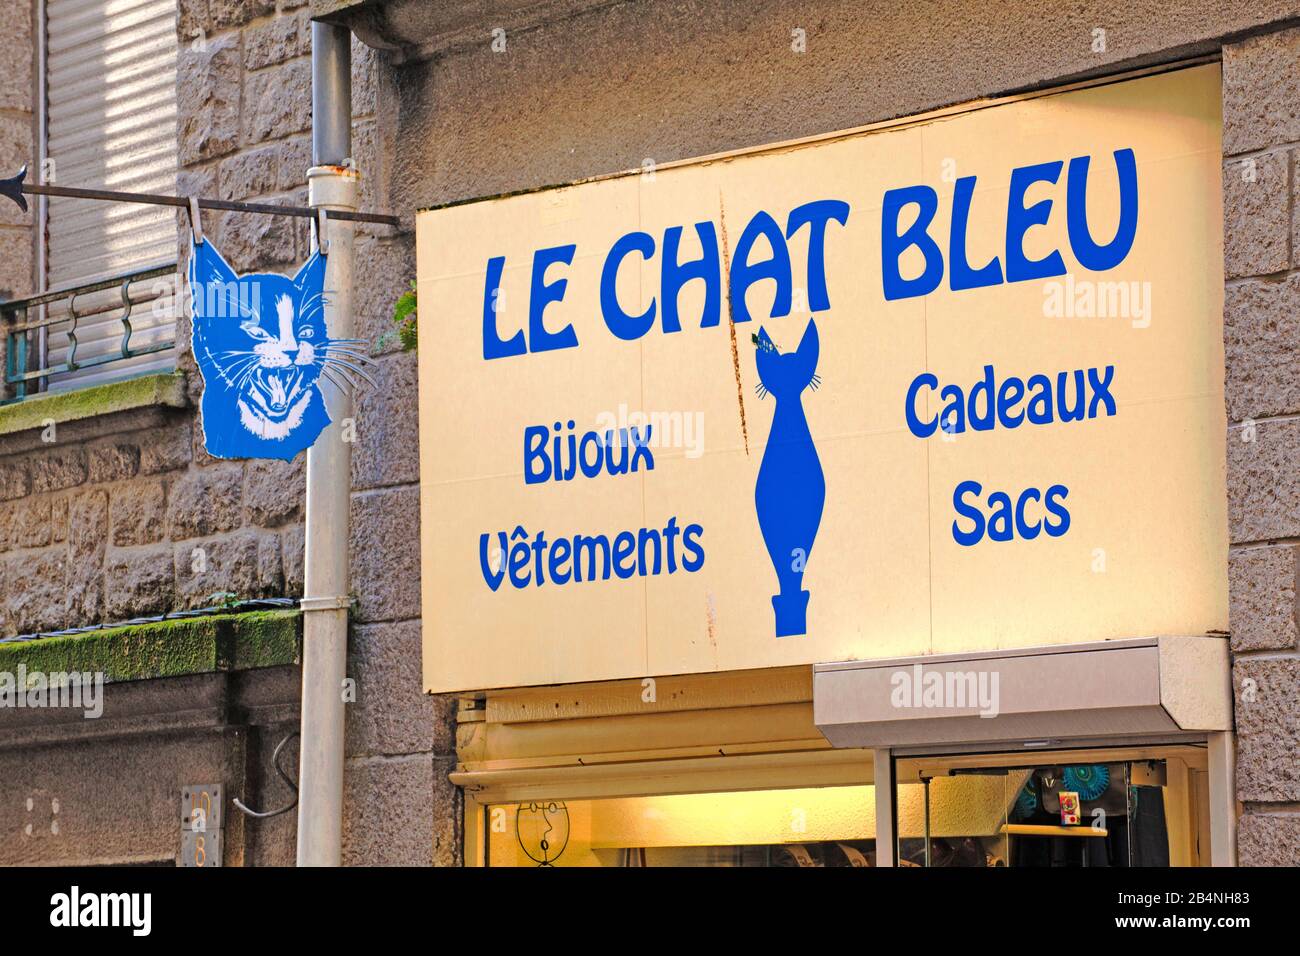 Saint-Malo ist eine Hafenstadt an der Cote d-'Emeraude in der Bretagne im Nordwesten Frankreichs. Alles für die Katze ist in Le Chat Bleu zu finden. Stockfoto